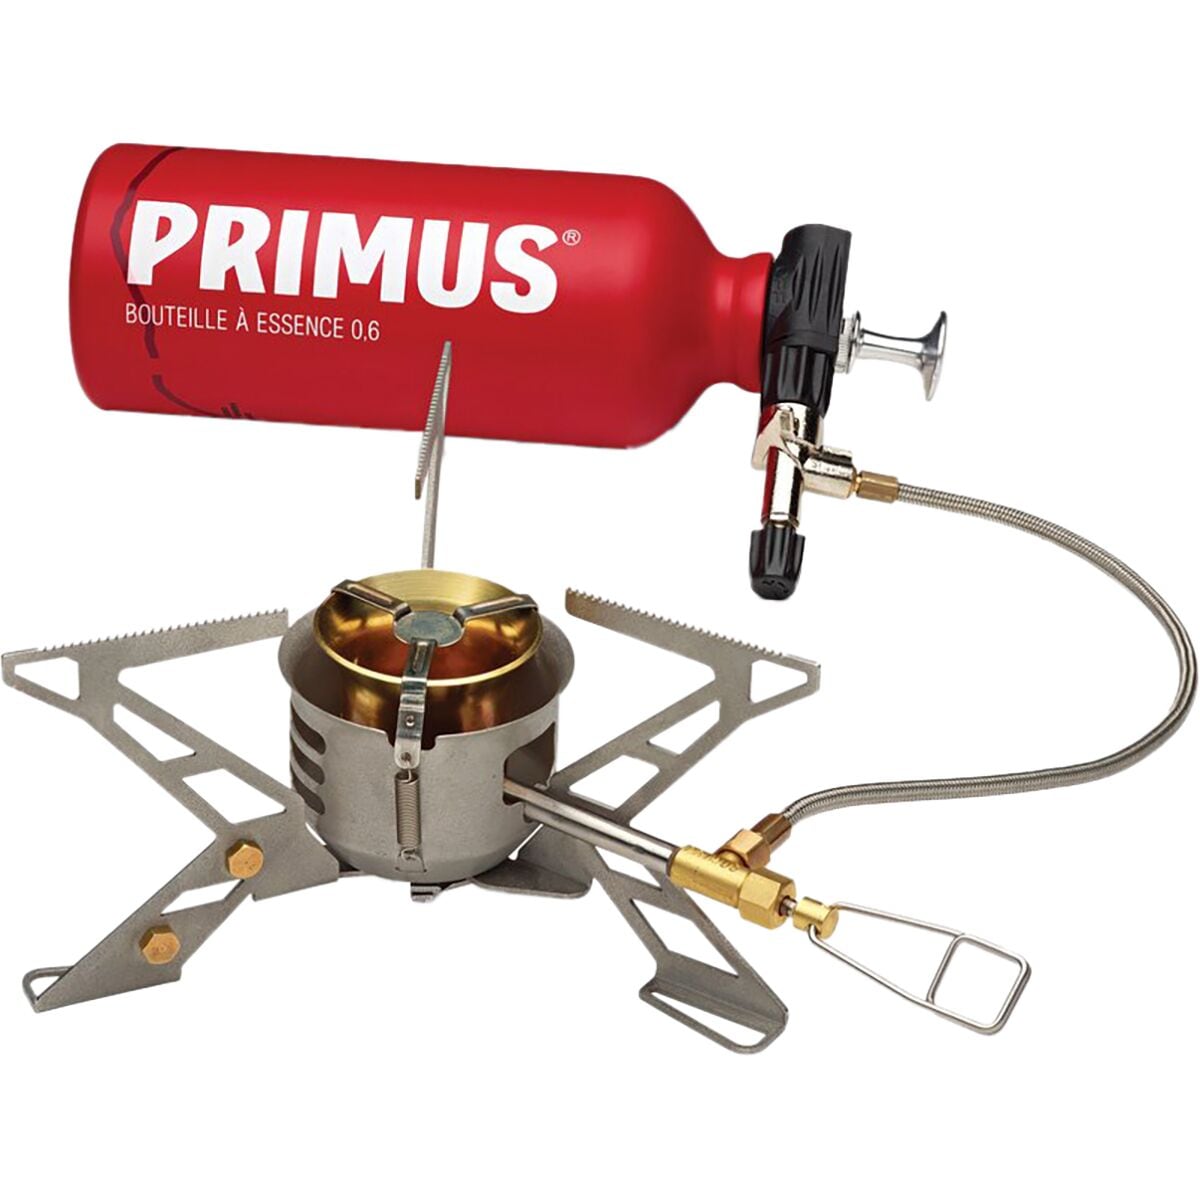 Primus OmniFuel Stove + ErgoPump & Fuel Bottle